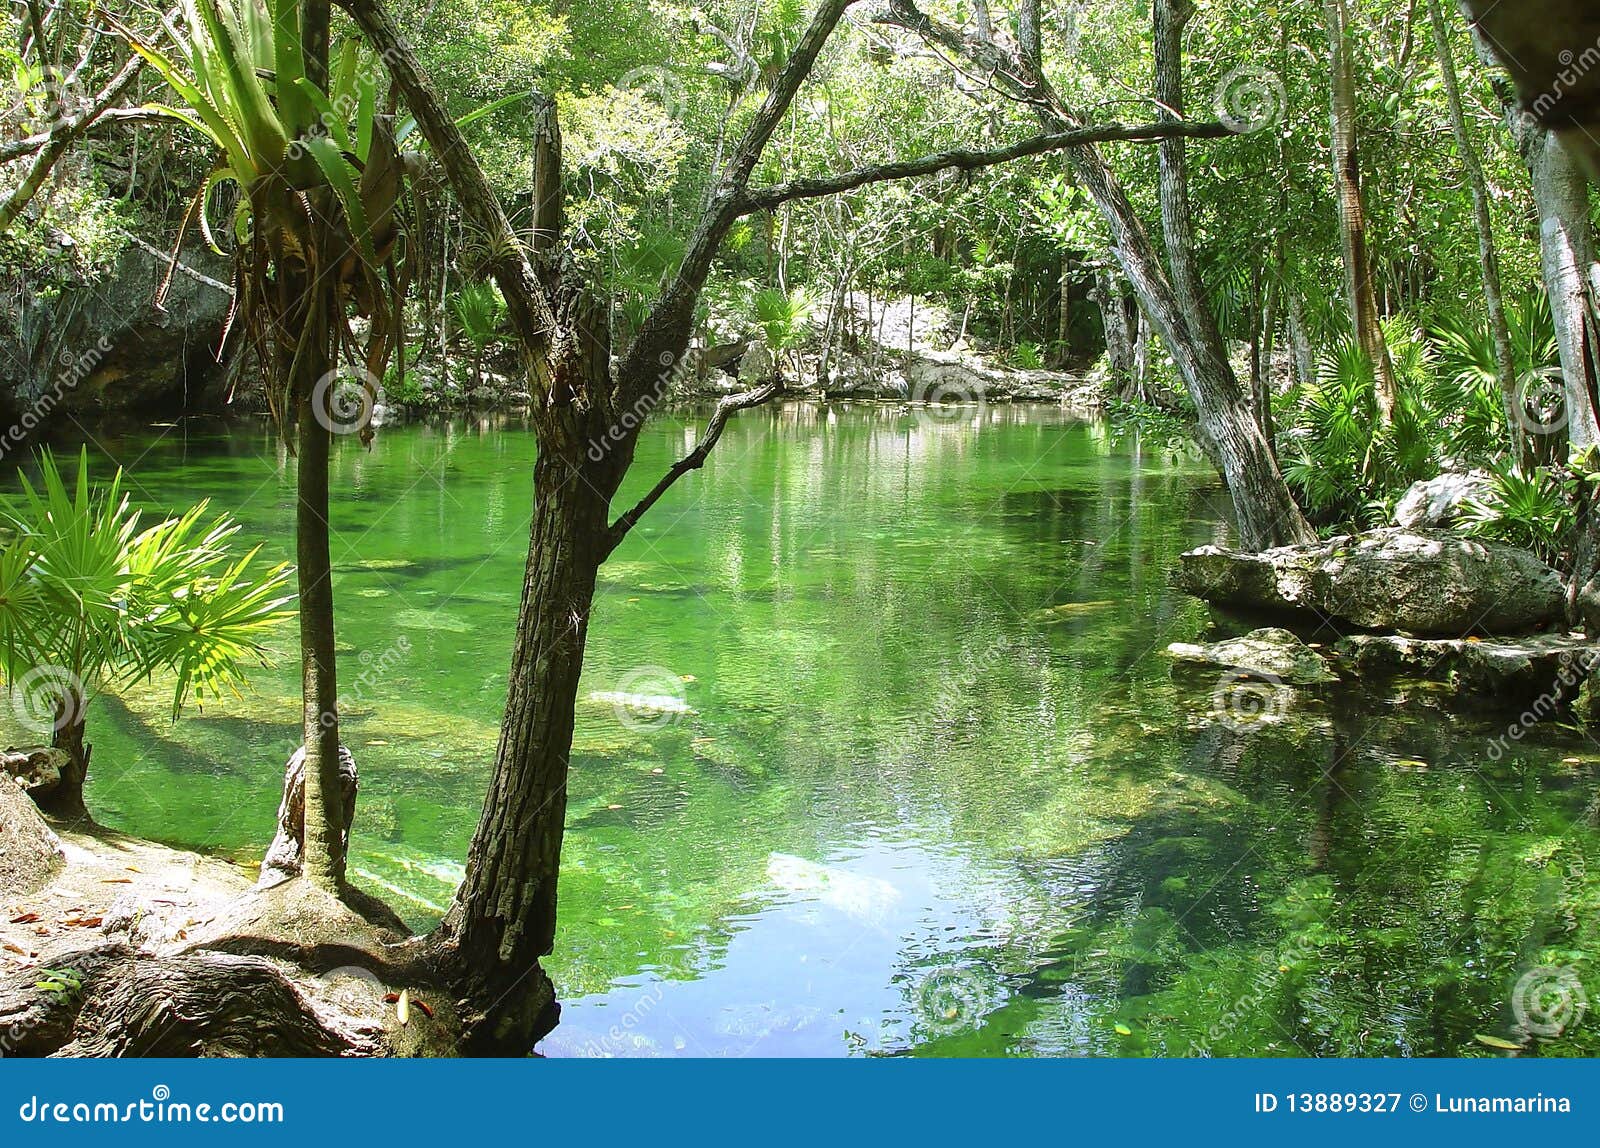 cenote riviera maya jungle mayan quintana roo